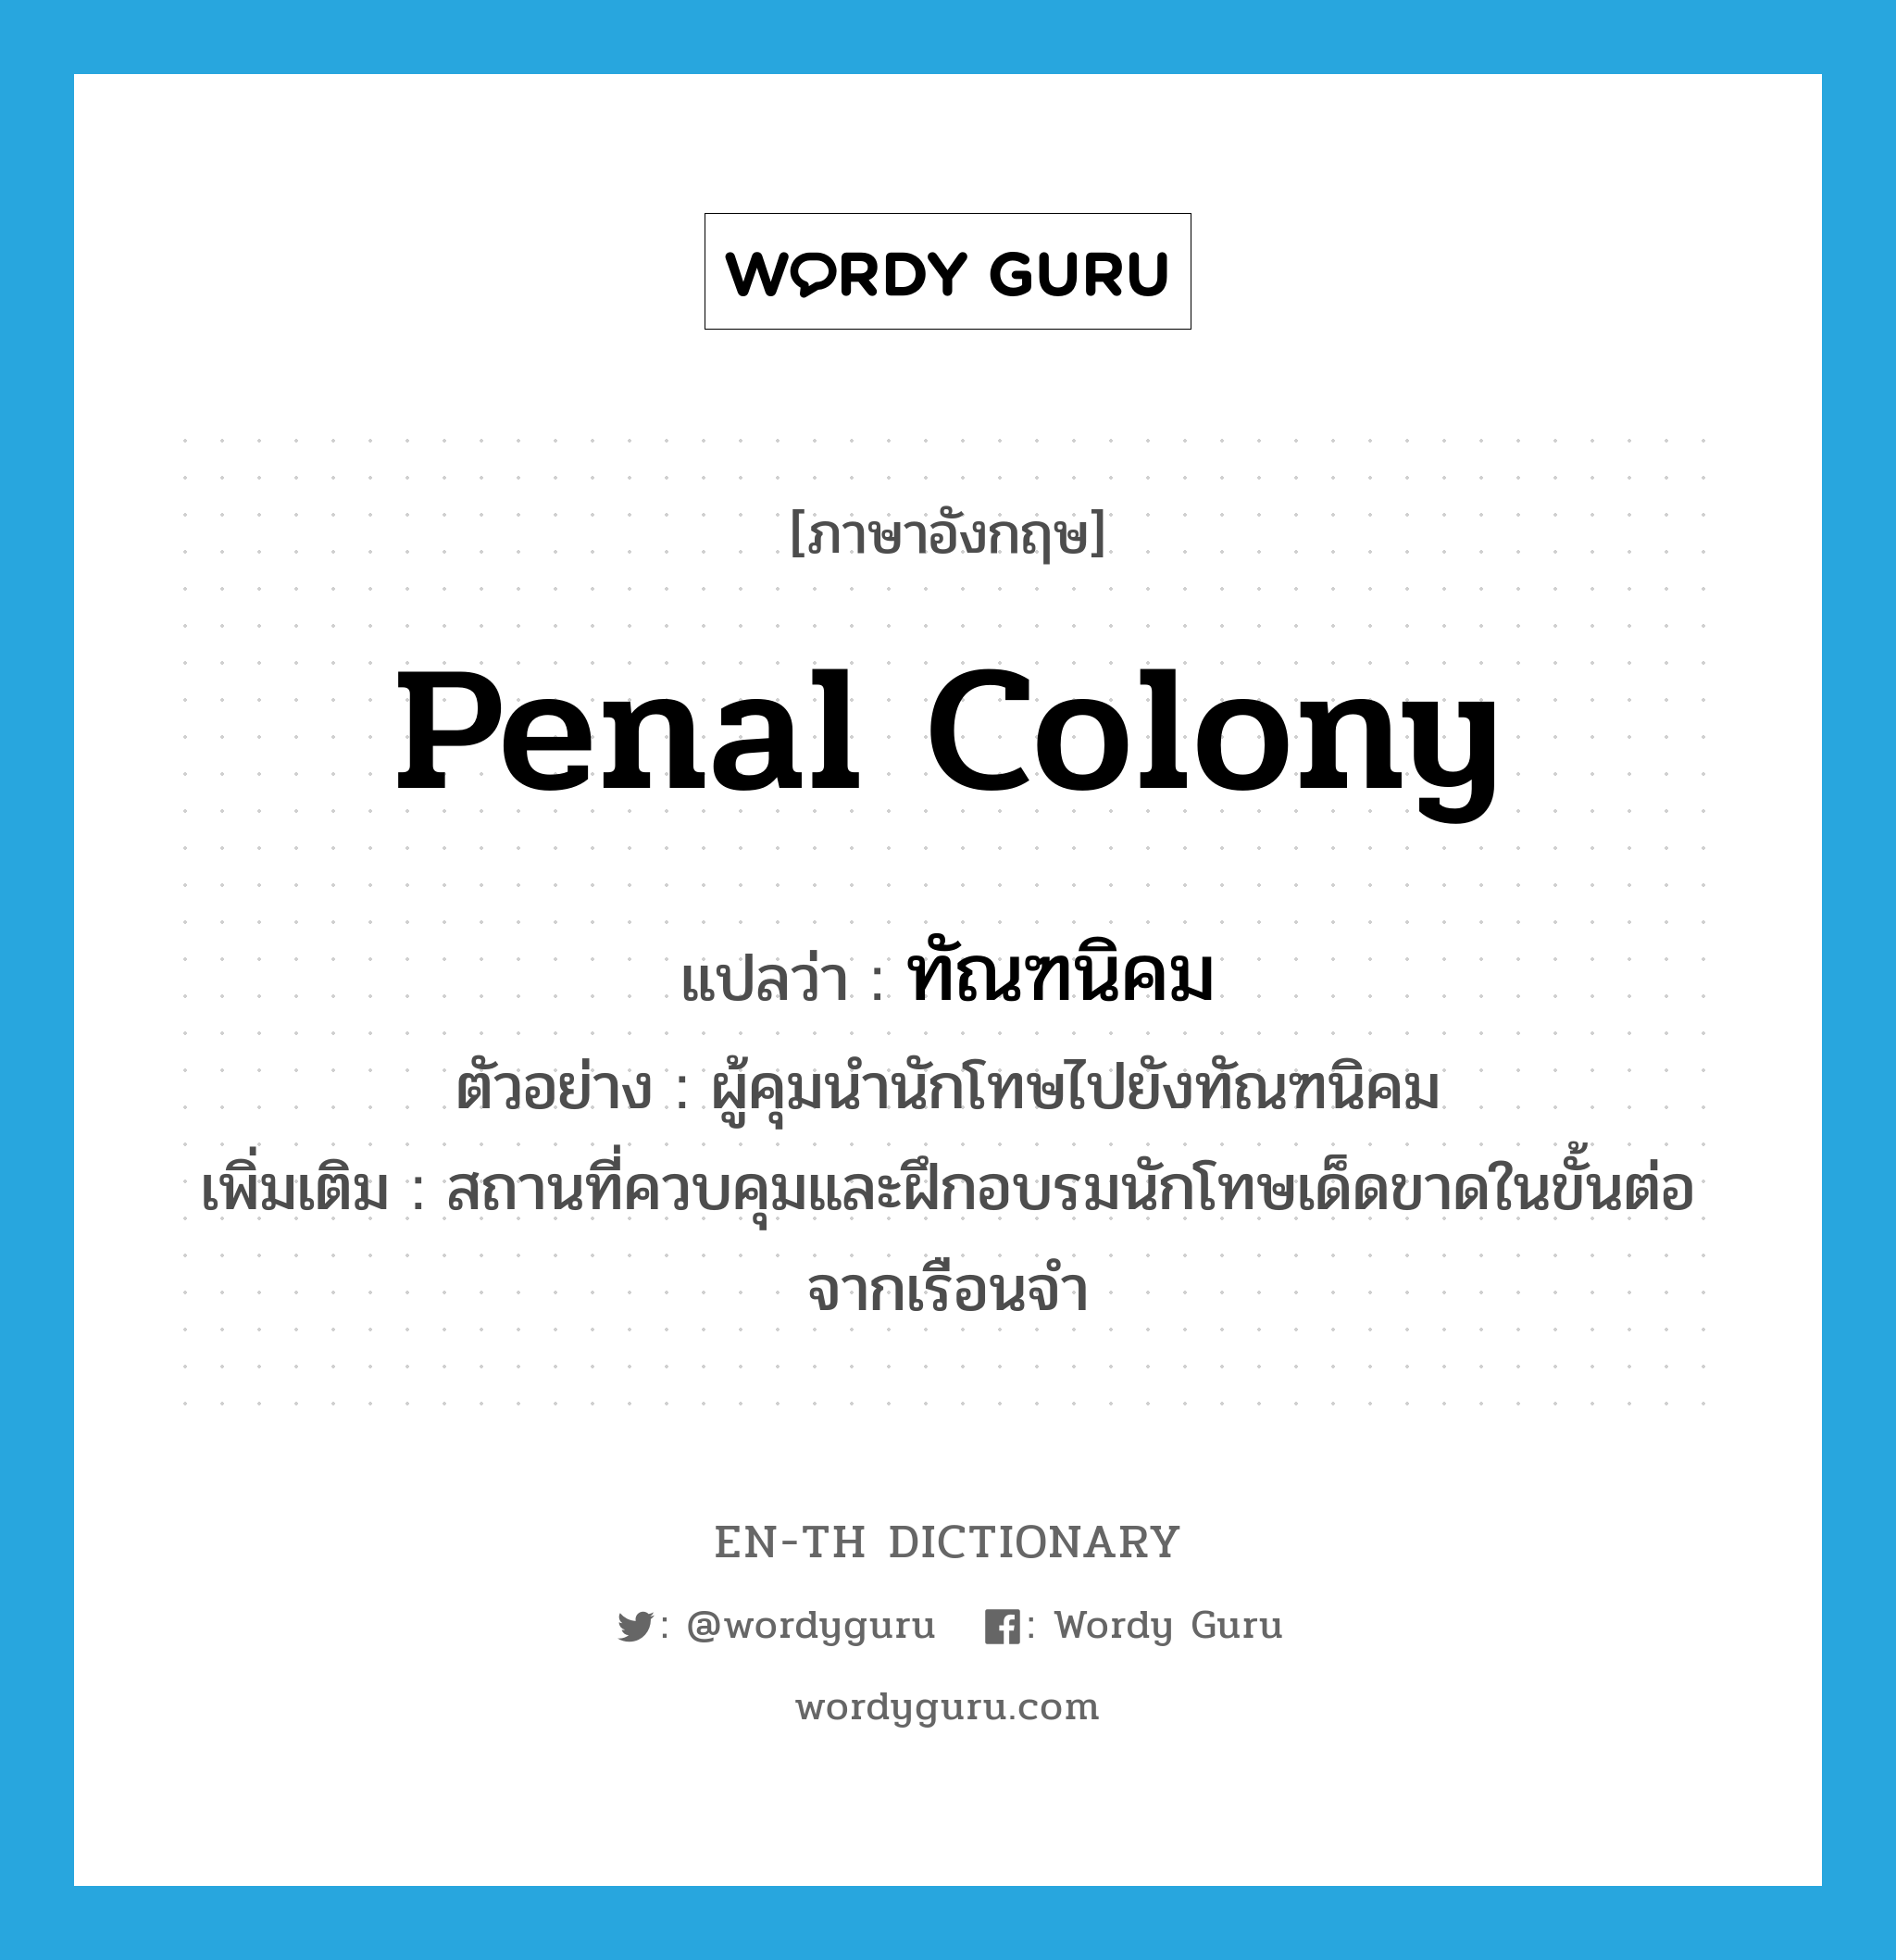 penal colony แปลว่า?, คำศัพท์ภาษาอังกฤษ penal colony แปลว่า ทัณฑนิคม ประเภท N ตัวอย่าง ผู้คุมนำนักโทษไปยังทัณฑนิคม เพิ่มเติม สถานที่ควบคุมและฝึกอบรมนักโทษเด็ดขาดในขั้นต่อจากเรือนจำ หมวด N